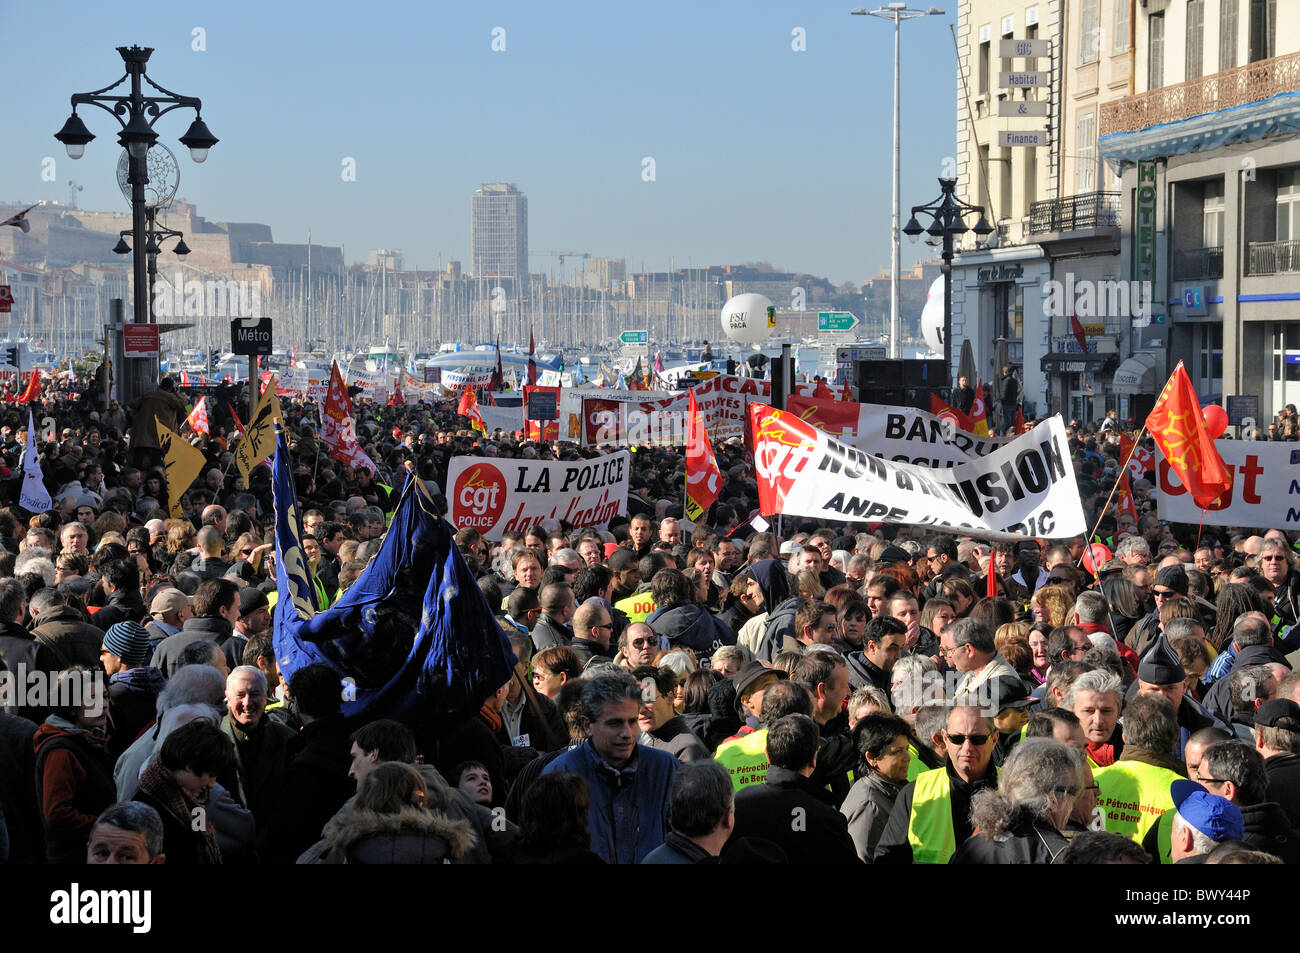 La foule démontrant sur les droits des travailleurs le 29 janvier 2009, dans le vieux port de Marseille, France. Banque D'Images